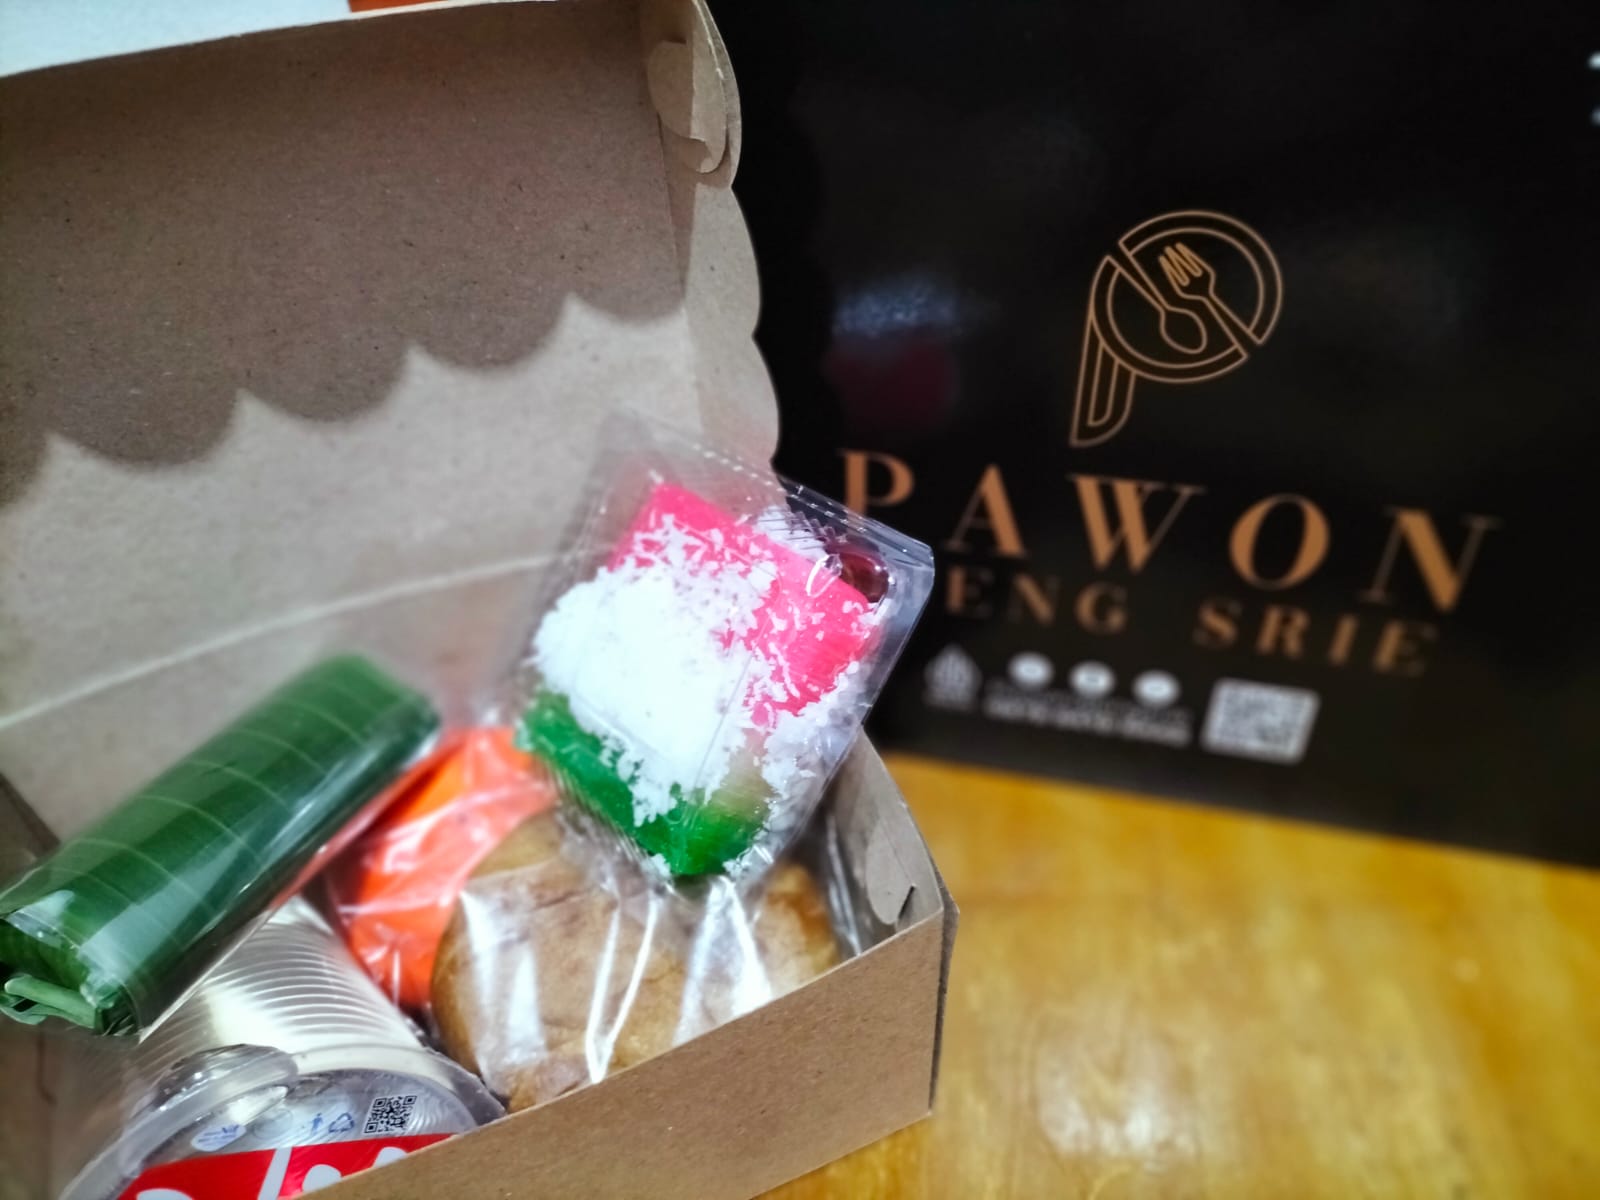 Snack Box PAWON DJENG SRI 7